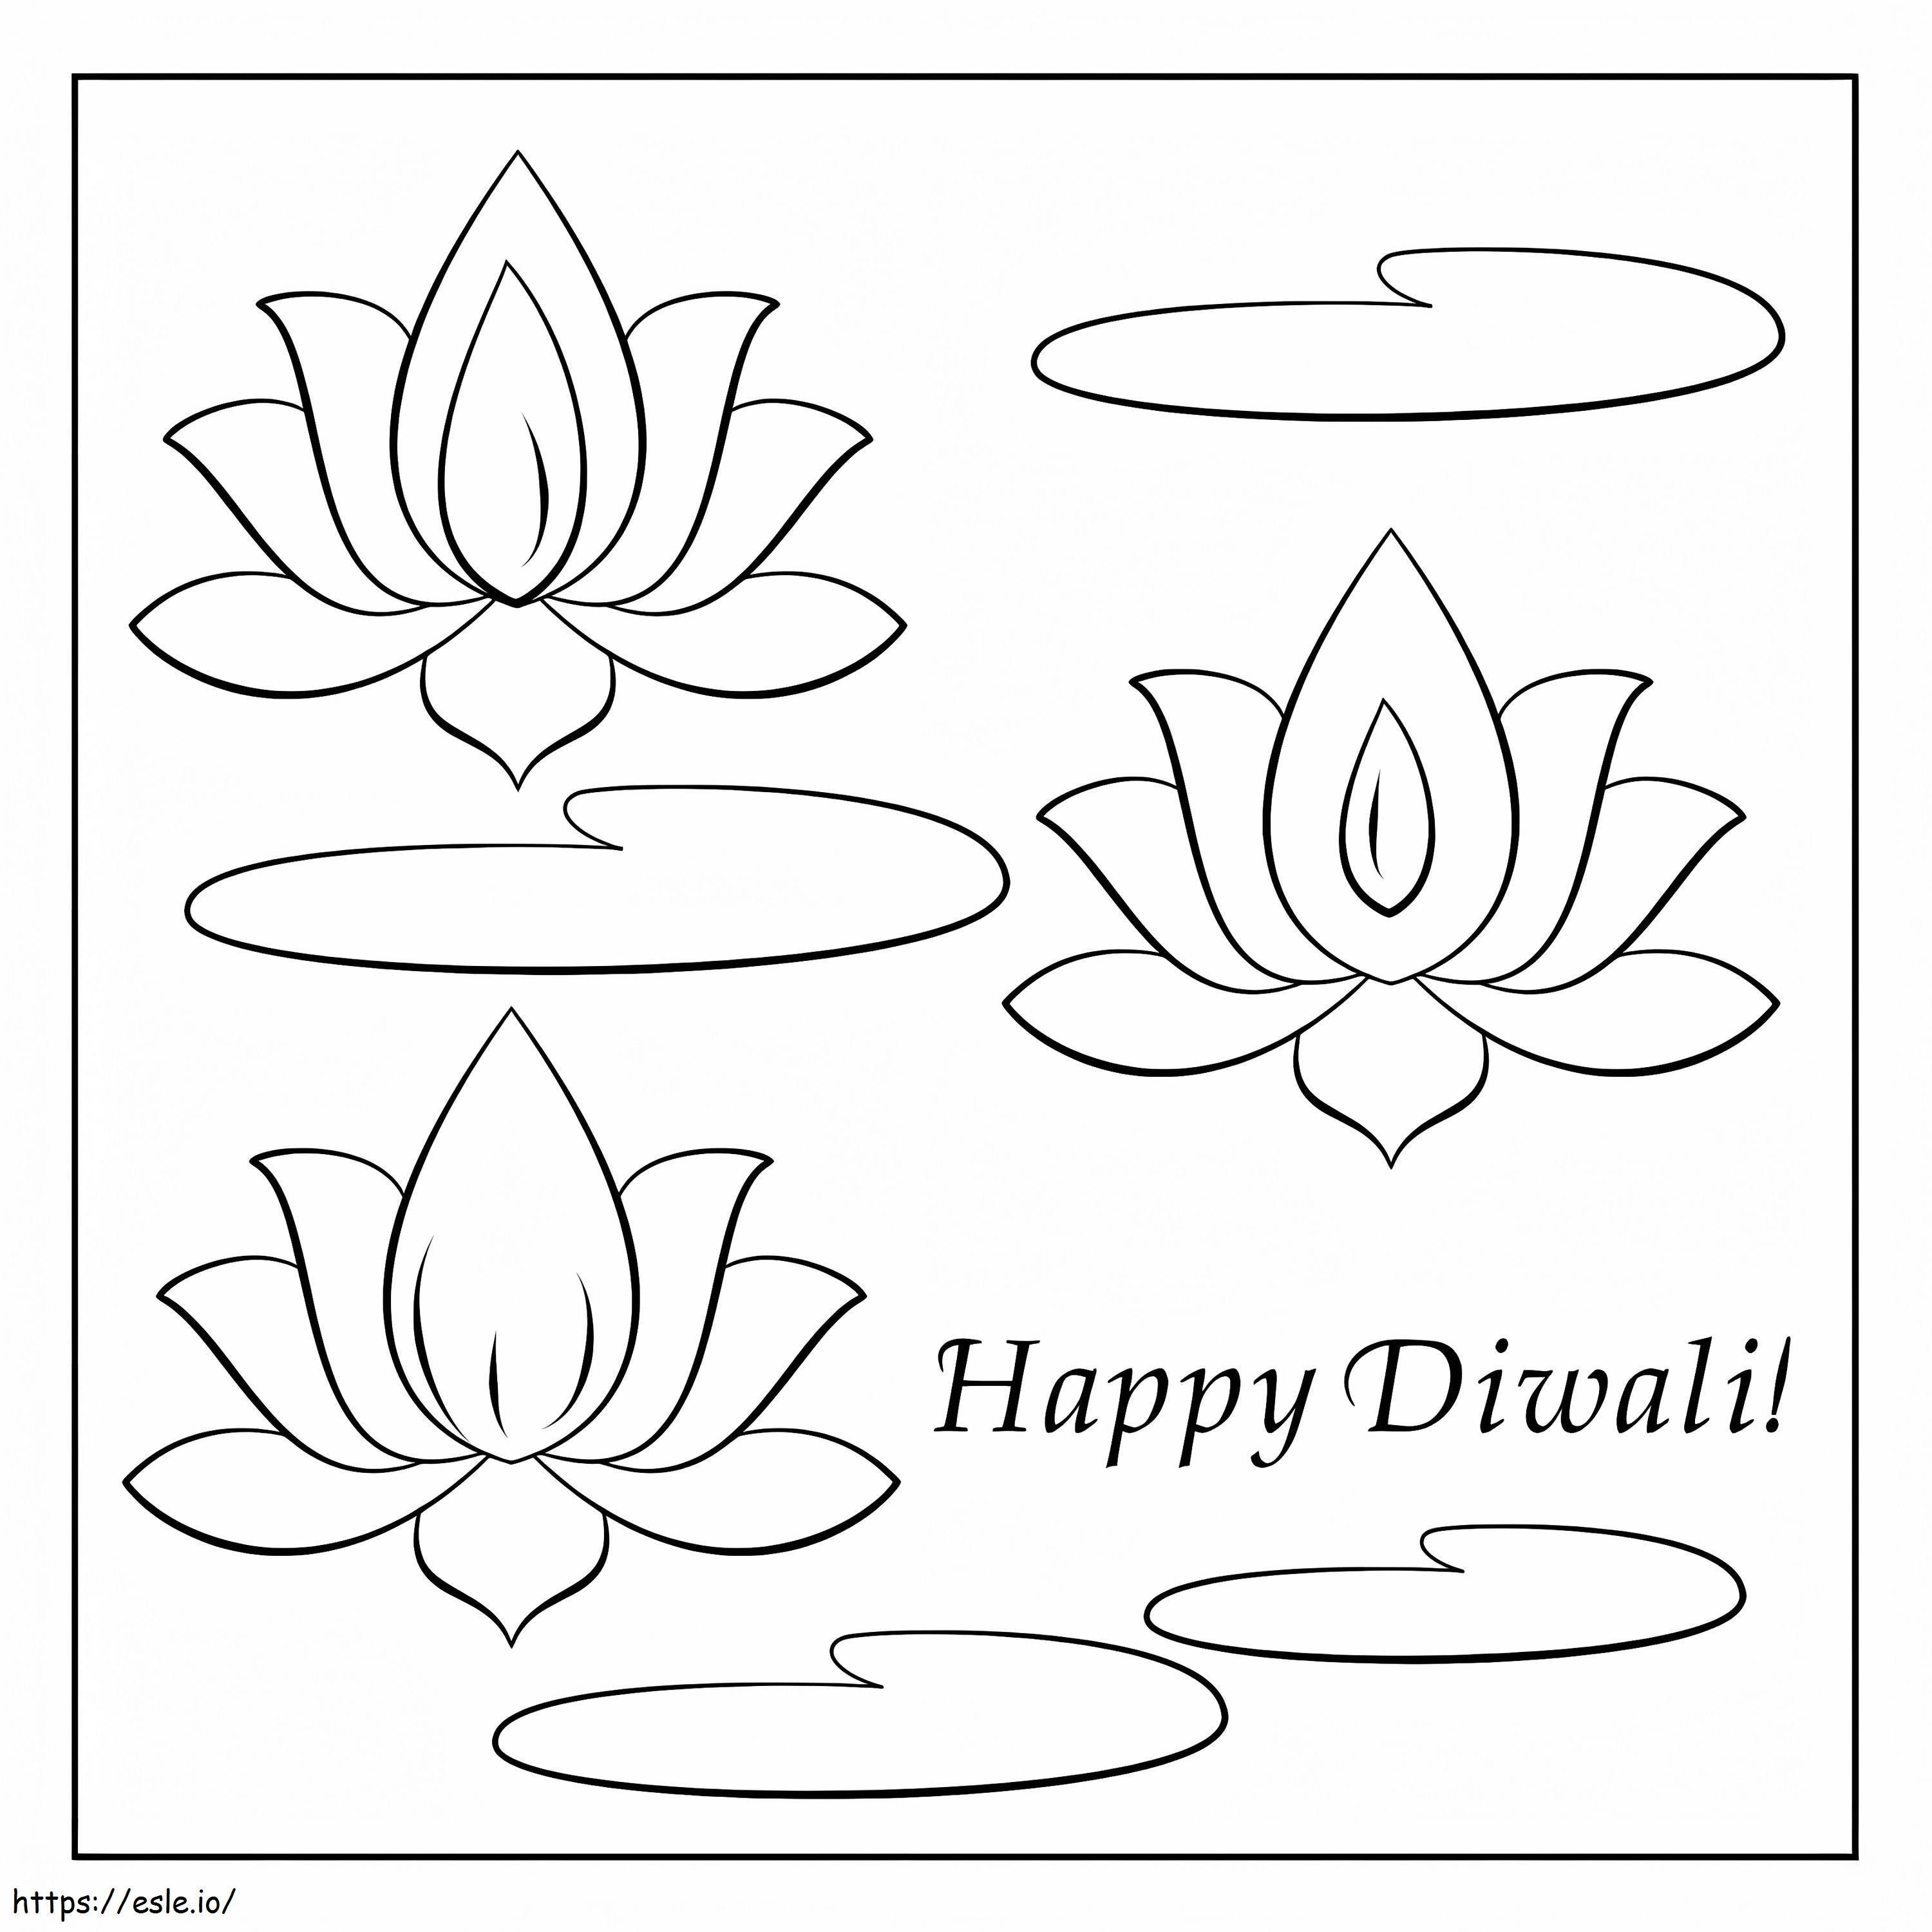 Cartão Feliz Diwali para colorir